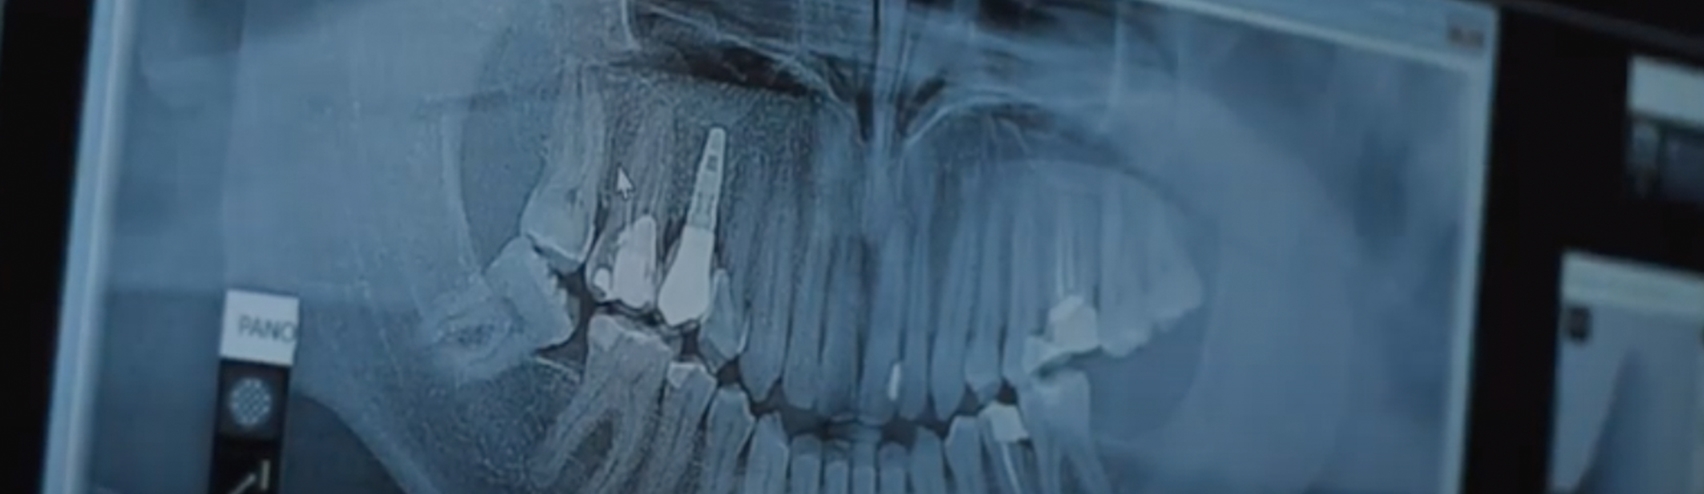 Serviço de Implantologia - Raio X clínica dentária